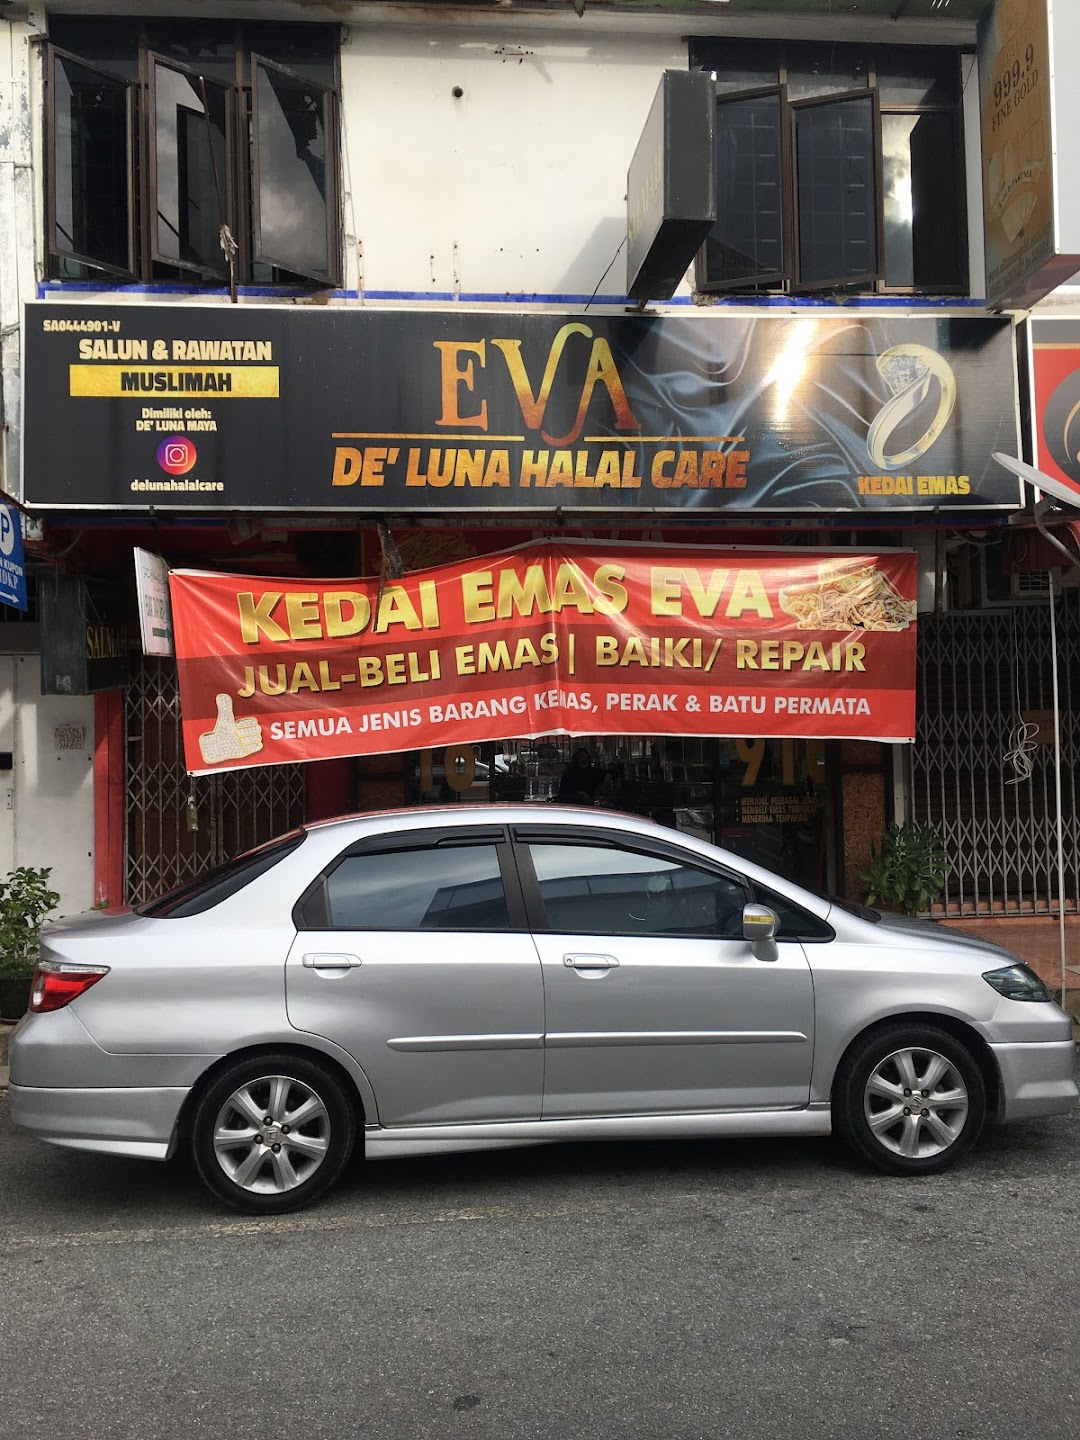 Eva Cafe